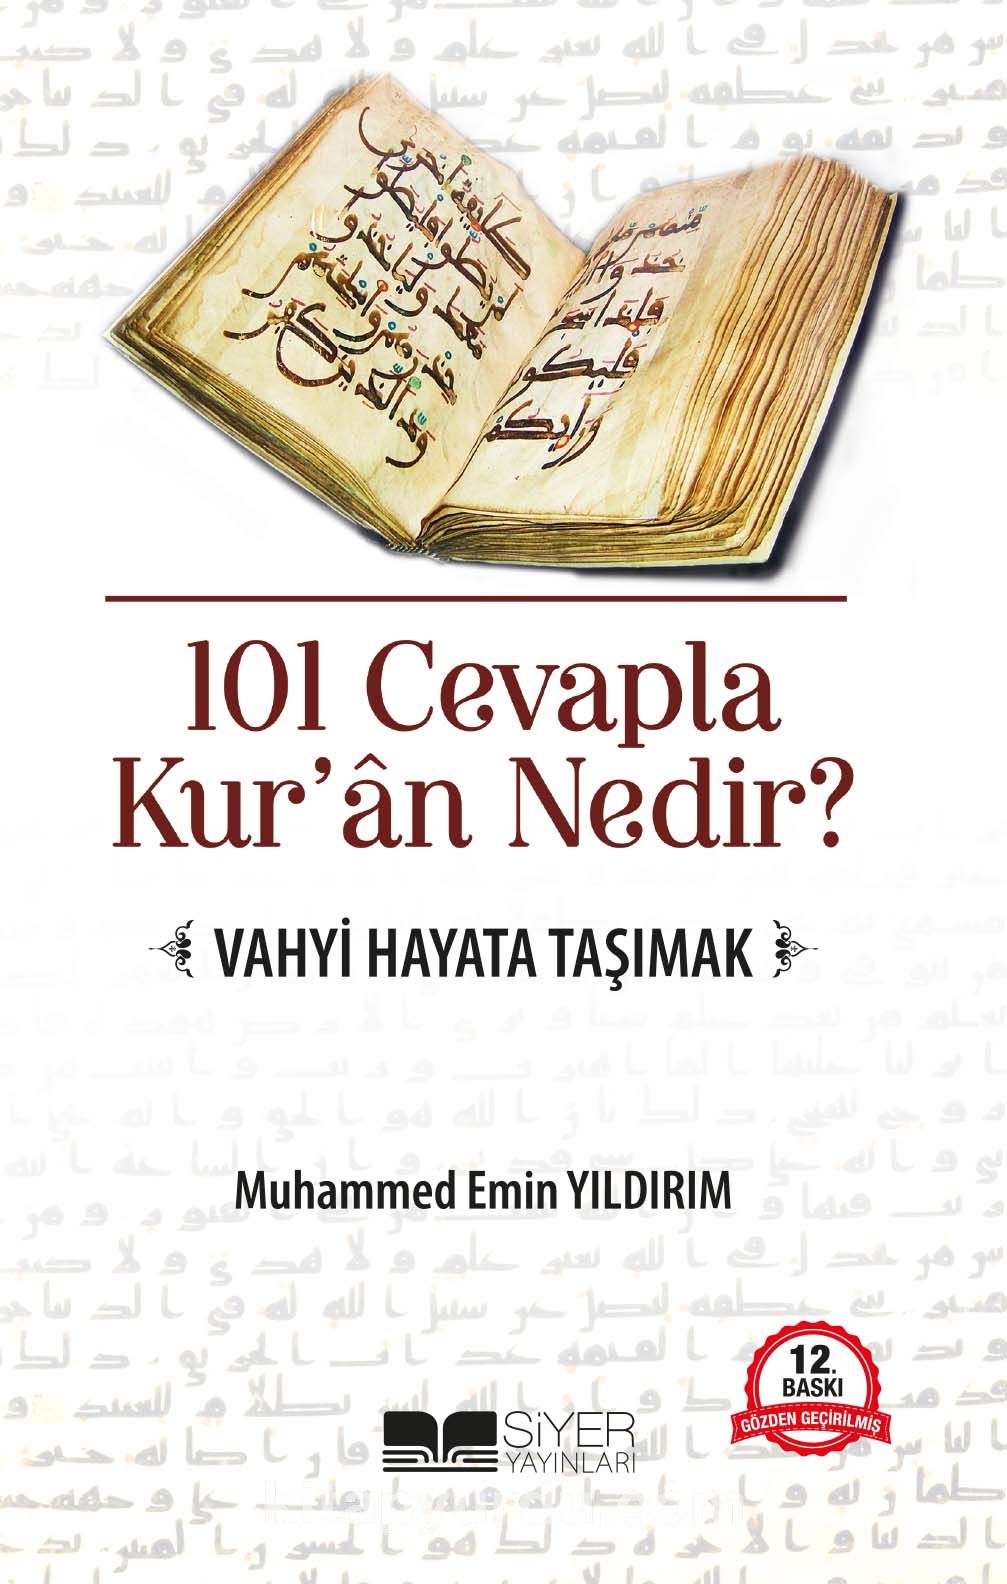 101 Cevapla Kur'an Nedir? & Vahyi Hayata Taşımak